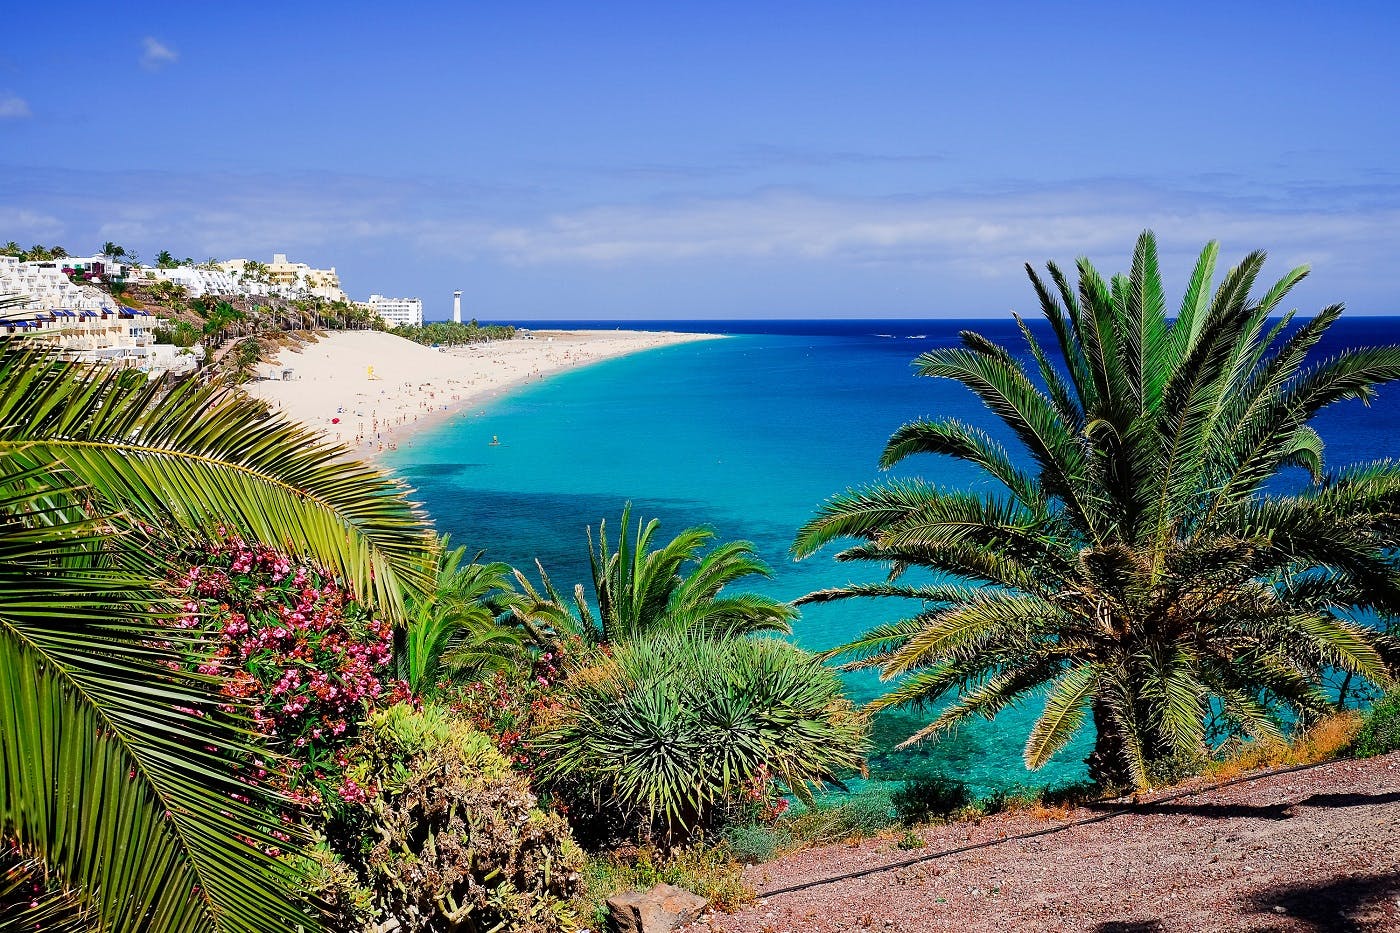 Romantische tour op Fuerteventura met een professionele gids